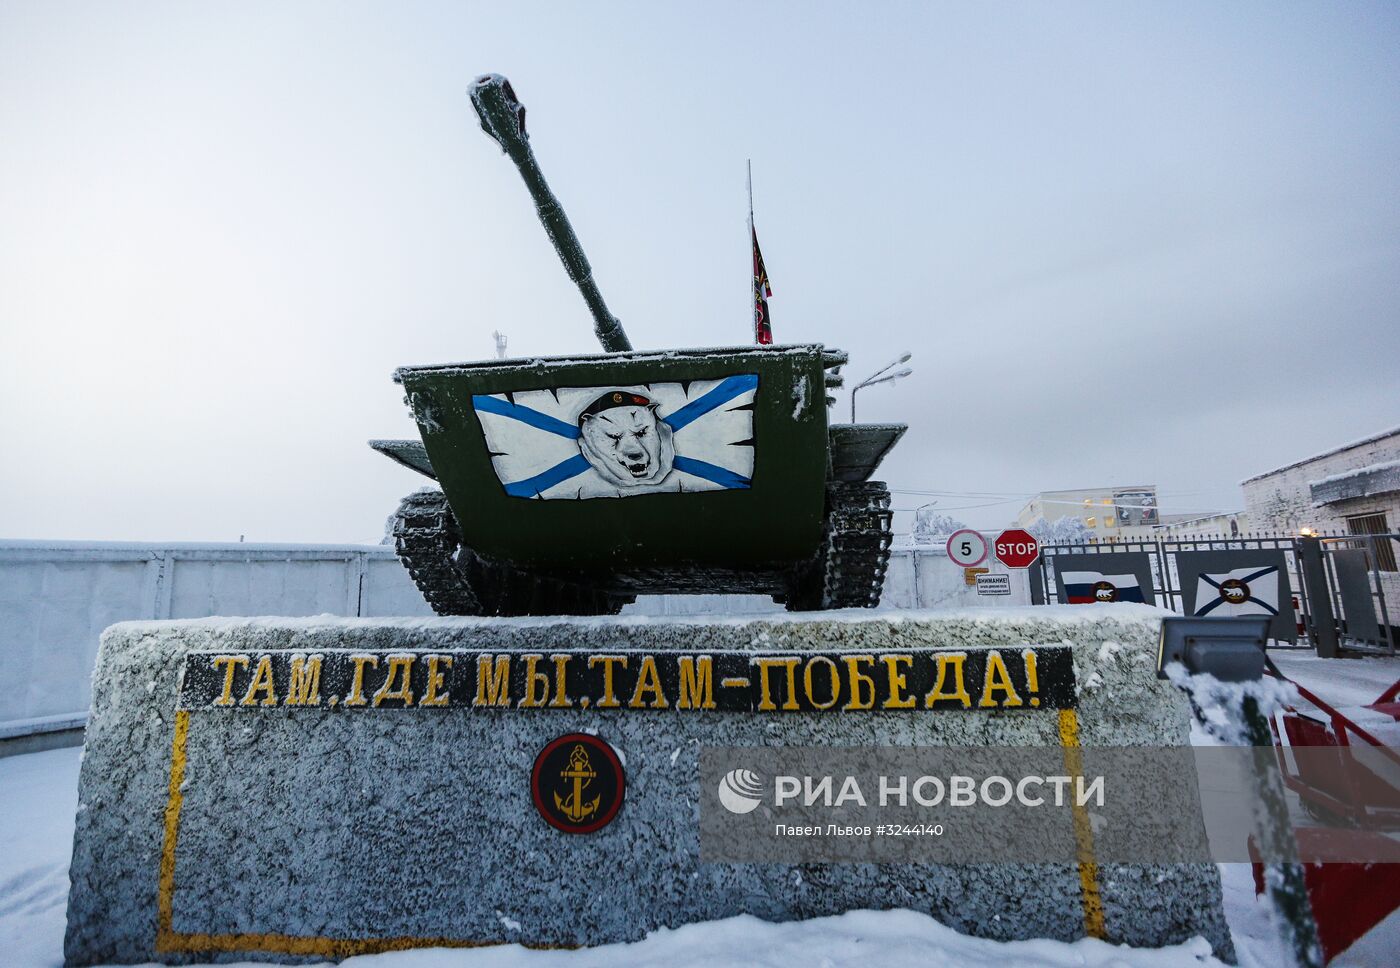 Тренировочная площадка для морских пехотинцев в Мурманской области